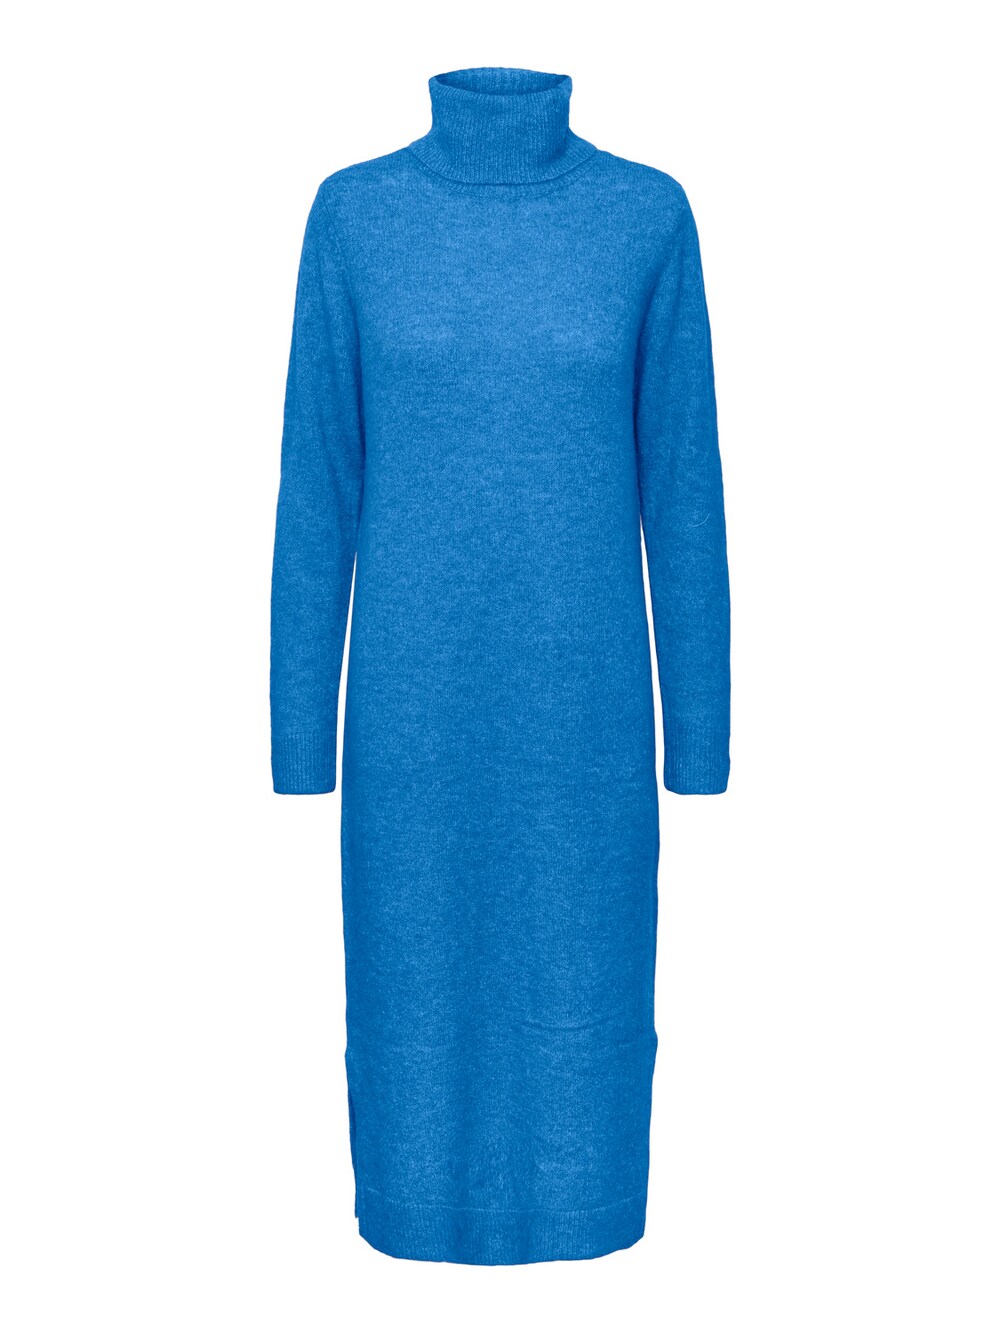 Вязанное платье Pieces JULIANA, синий вязанное платье pieces natalee песок